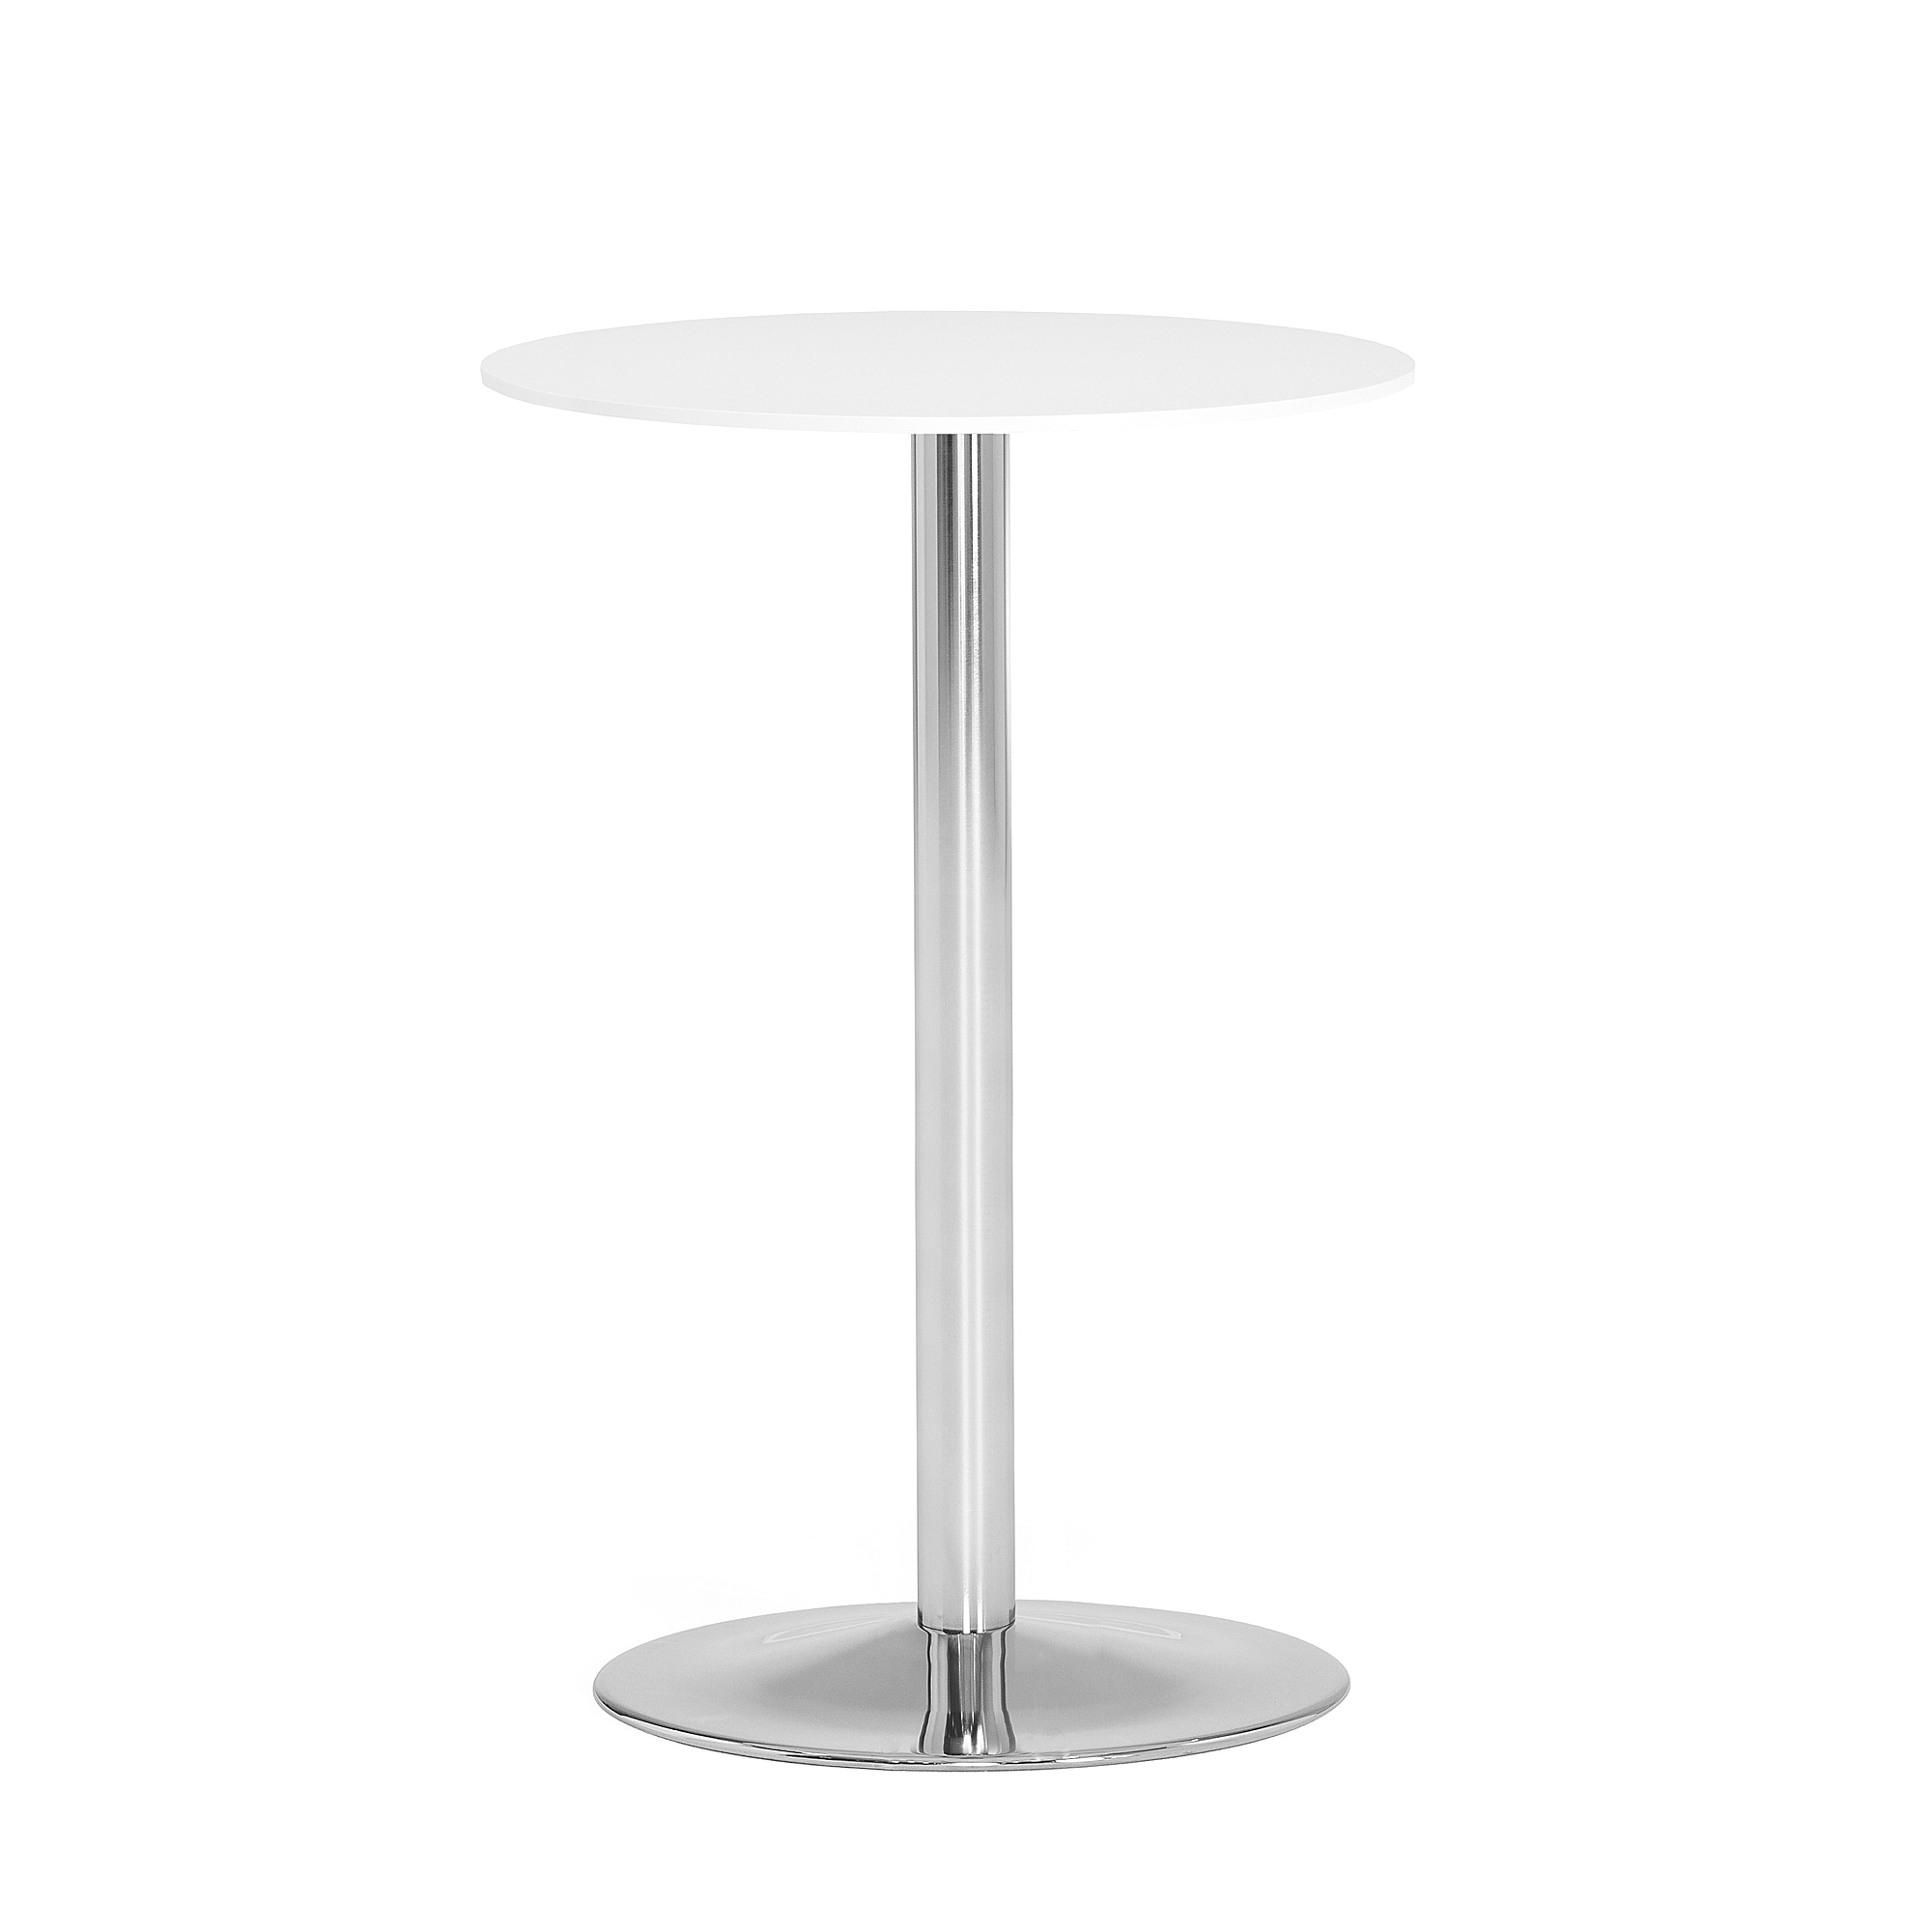 Barový stůl LILY, Ø 700 mm, bílá/chrom